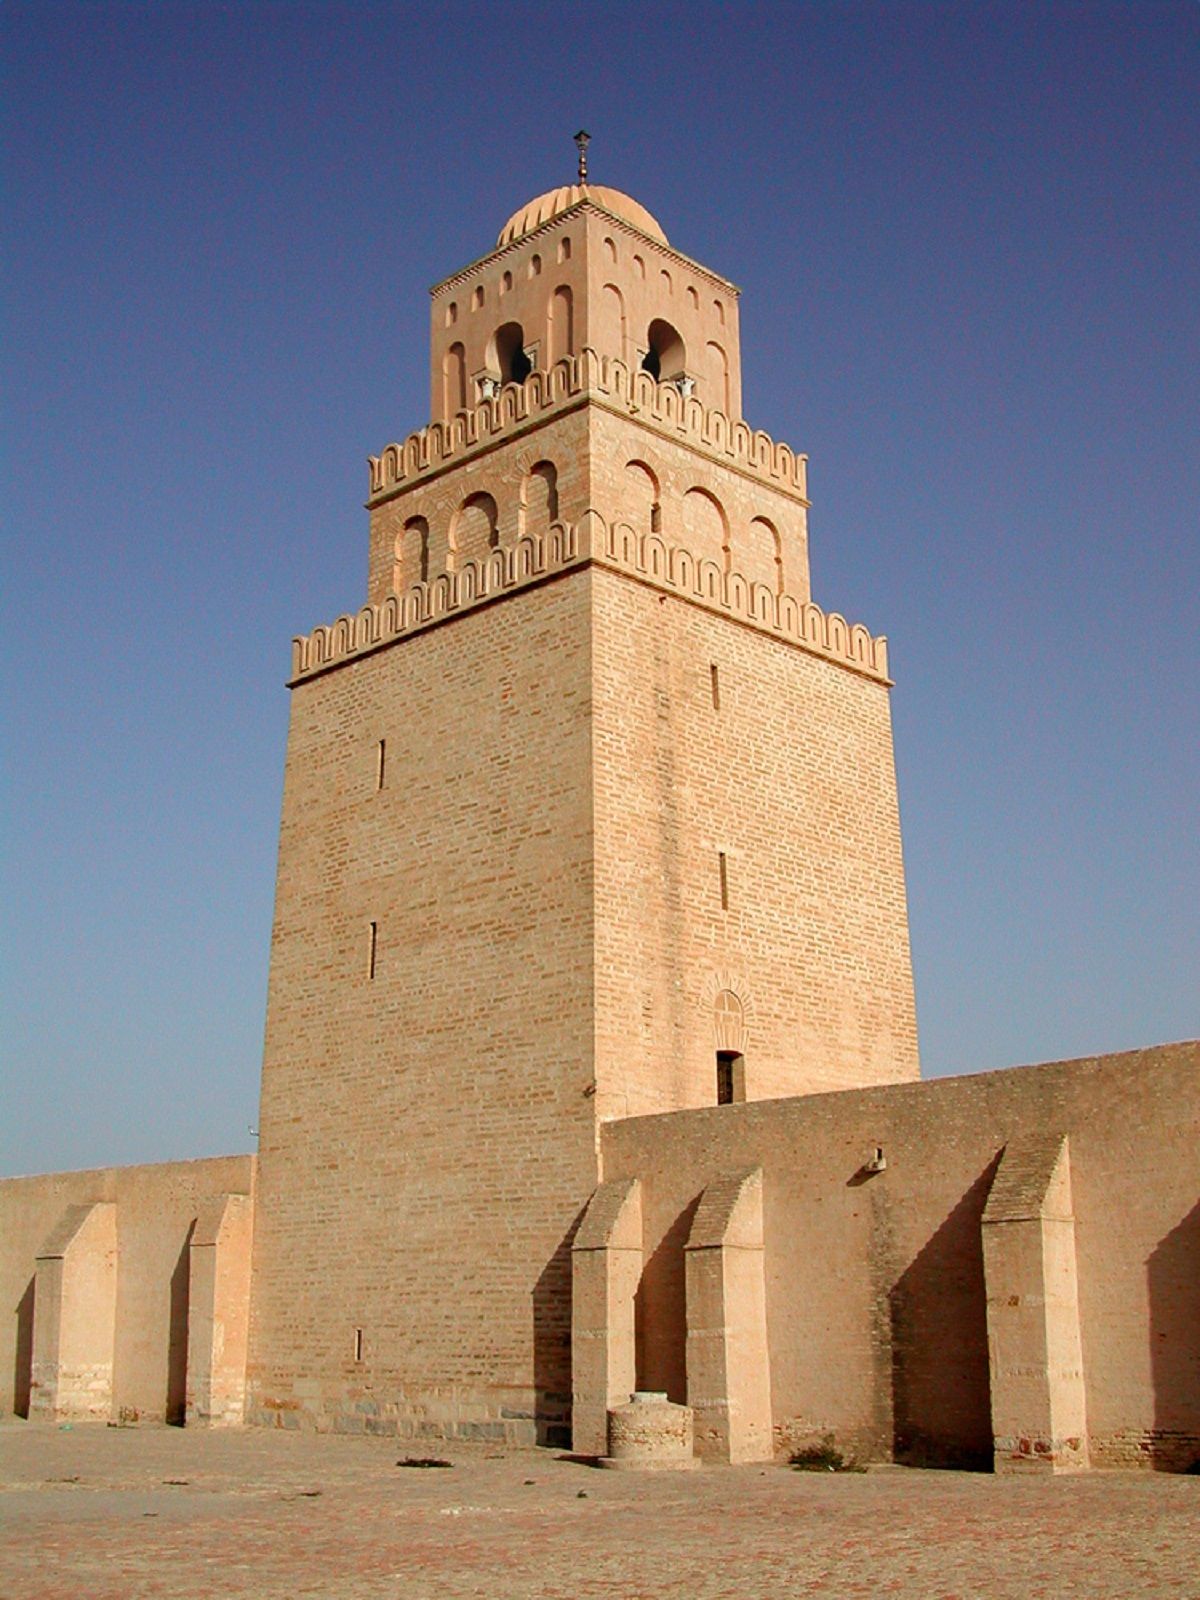 Vai trò của tiểu tháp minaret trong kiến trúc Hồi giáo